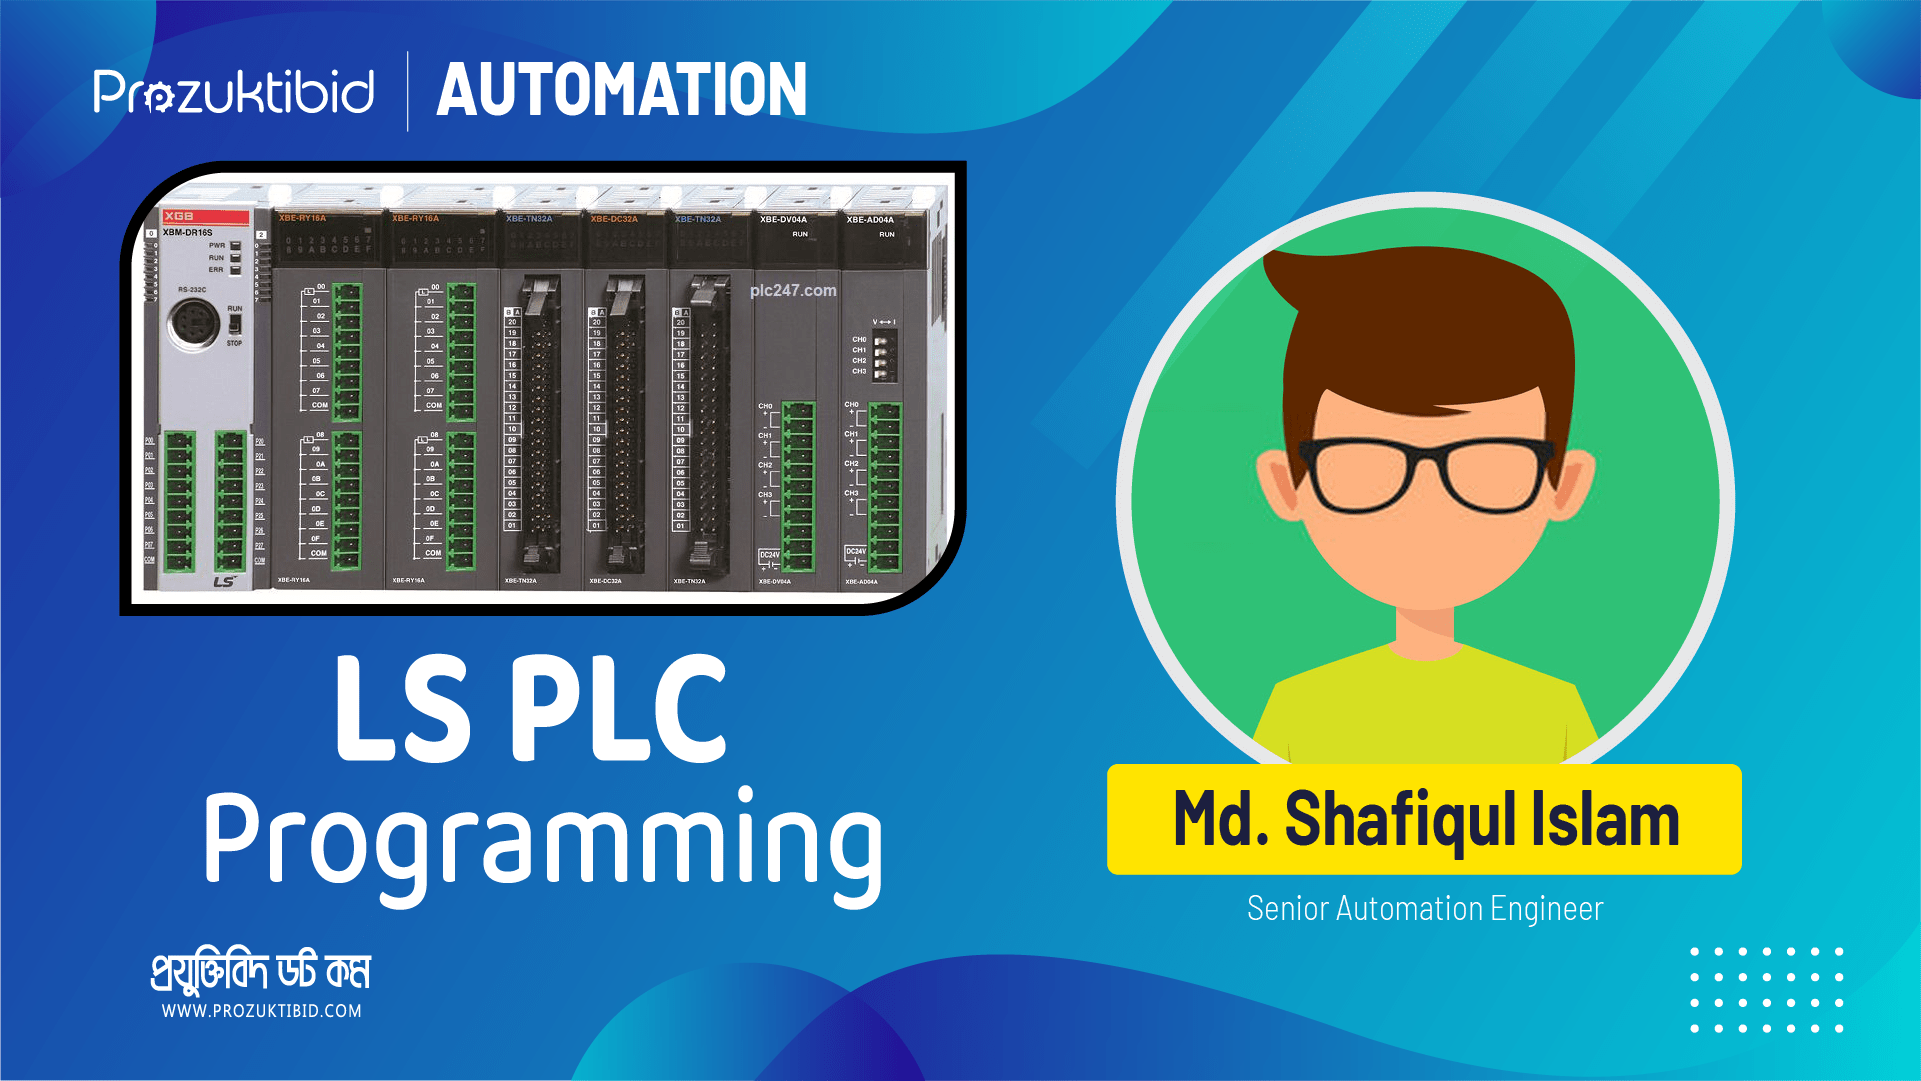 LS PLC Programming